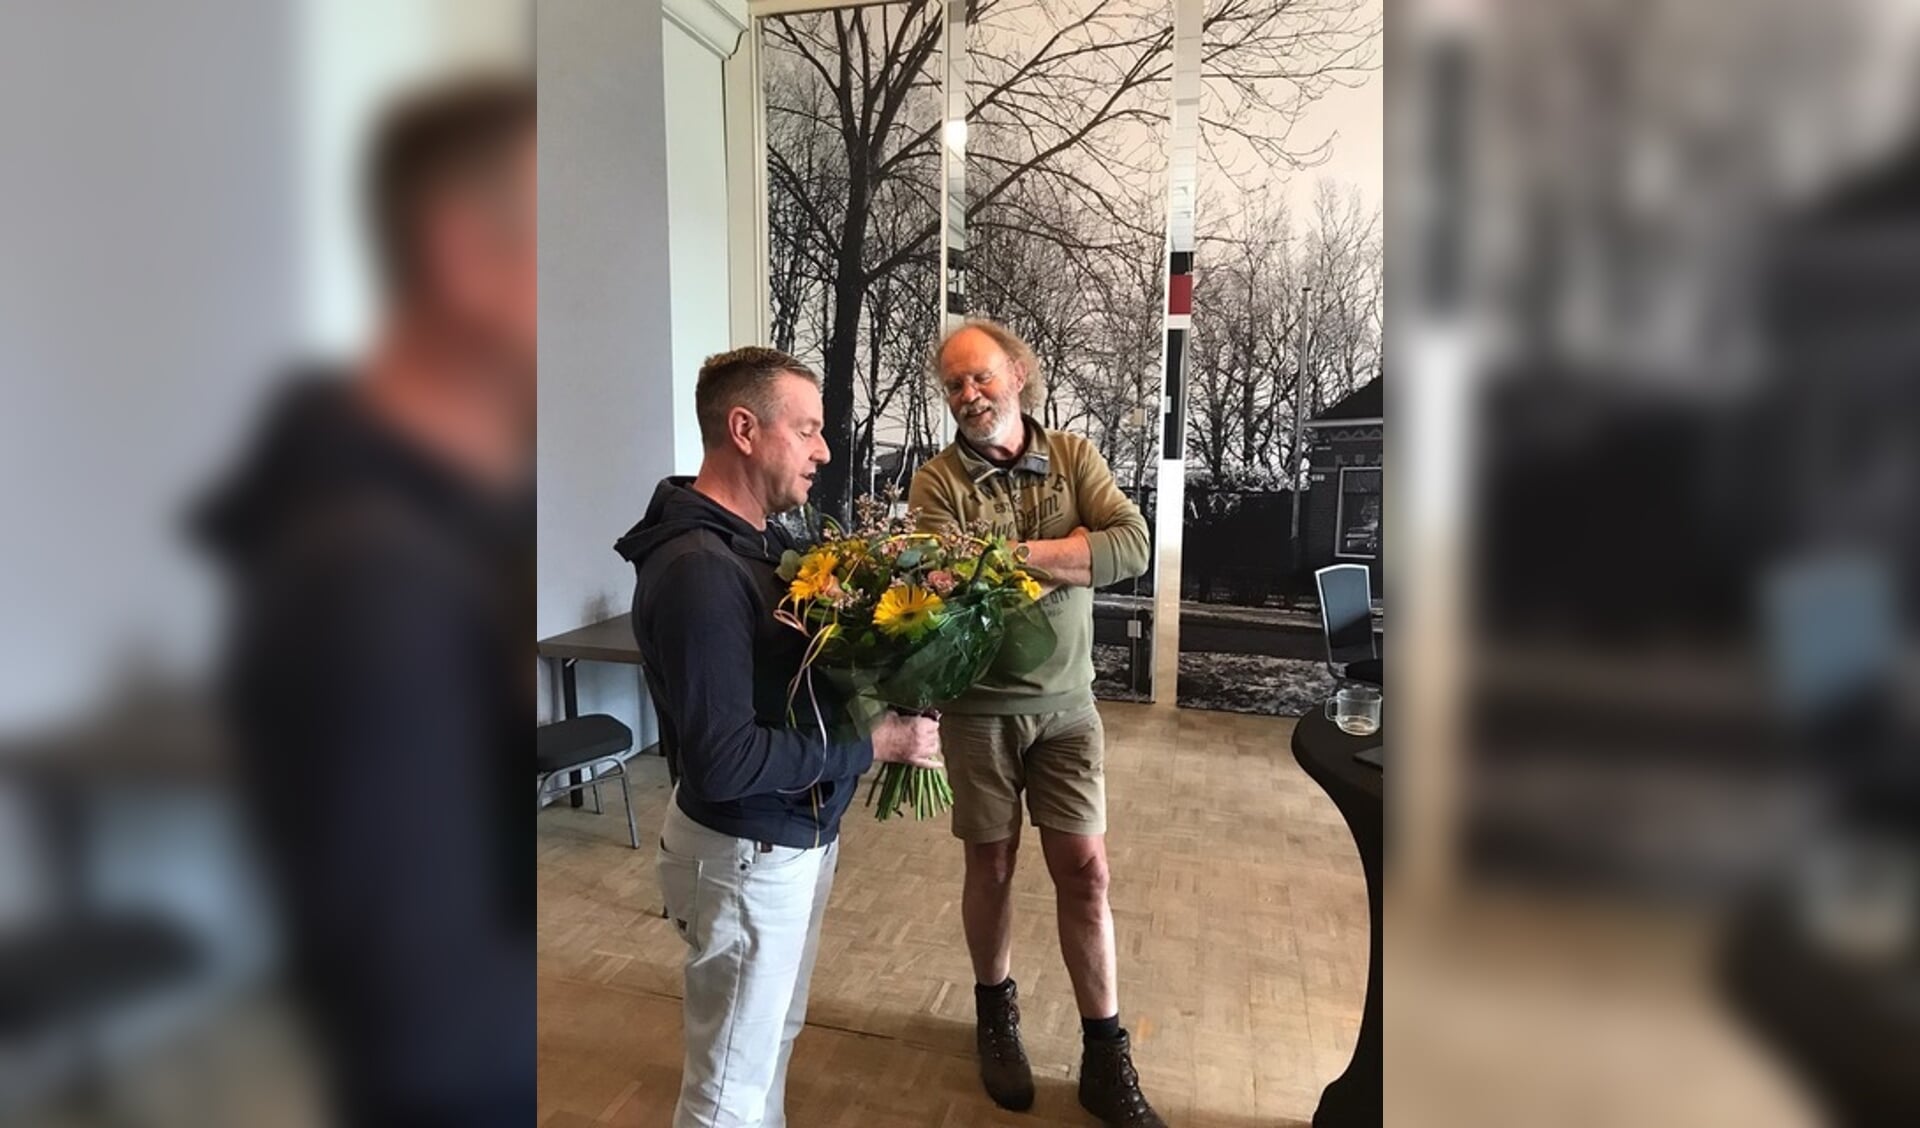 Kees Koudstaal (rechts op de foto) op zijn laatste werkdag. Hij krijgt bloemen uit handen van Teake Vaartjes - vice voorzitter Stichting Sociaal Cultureel Werk Burgum.

